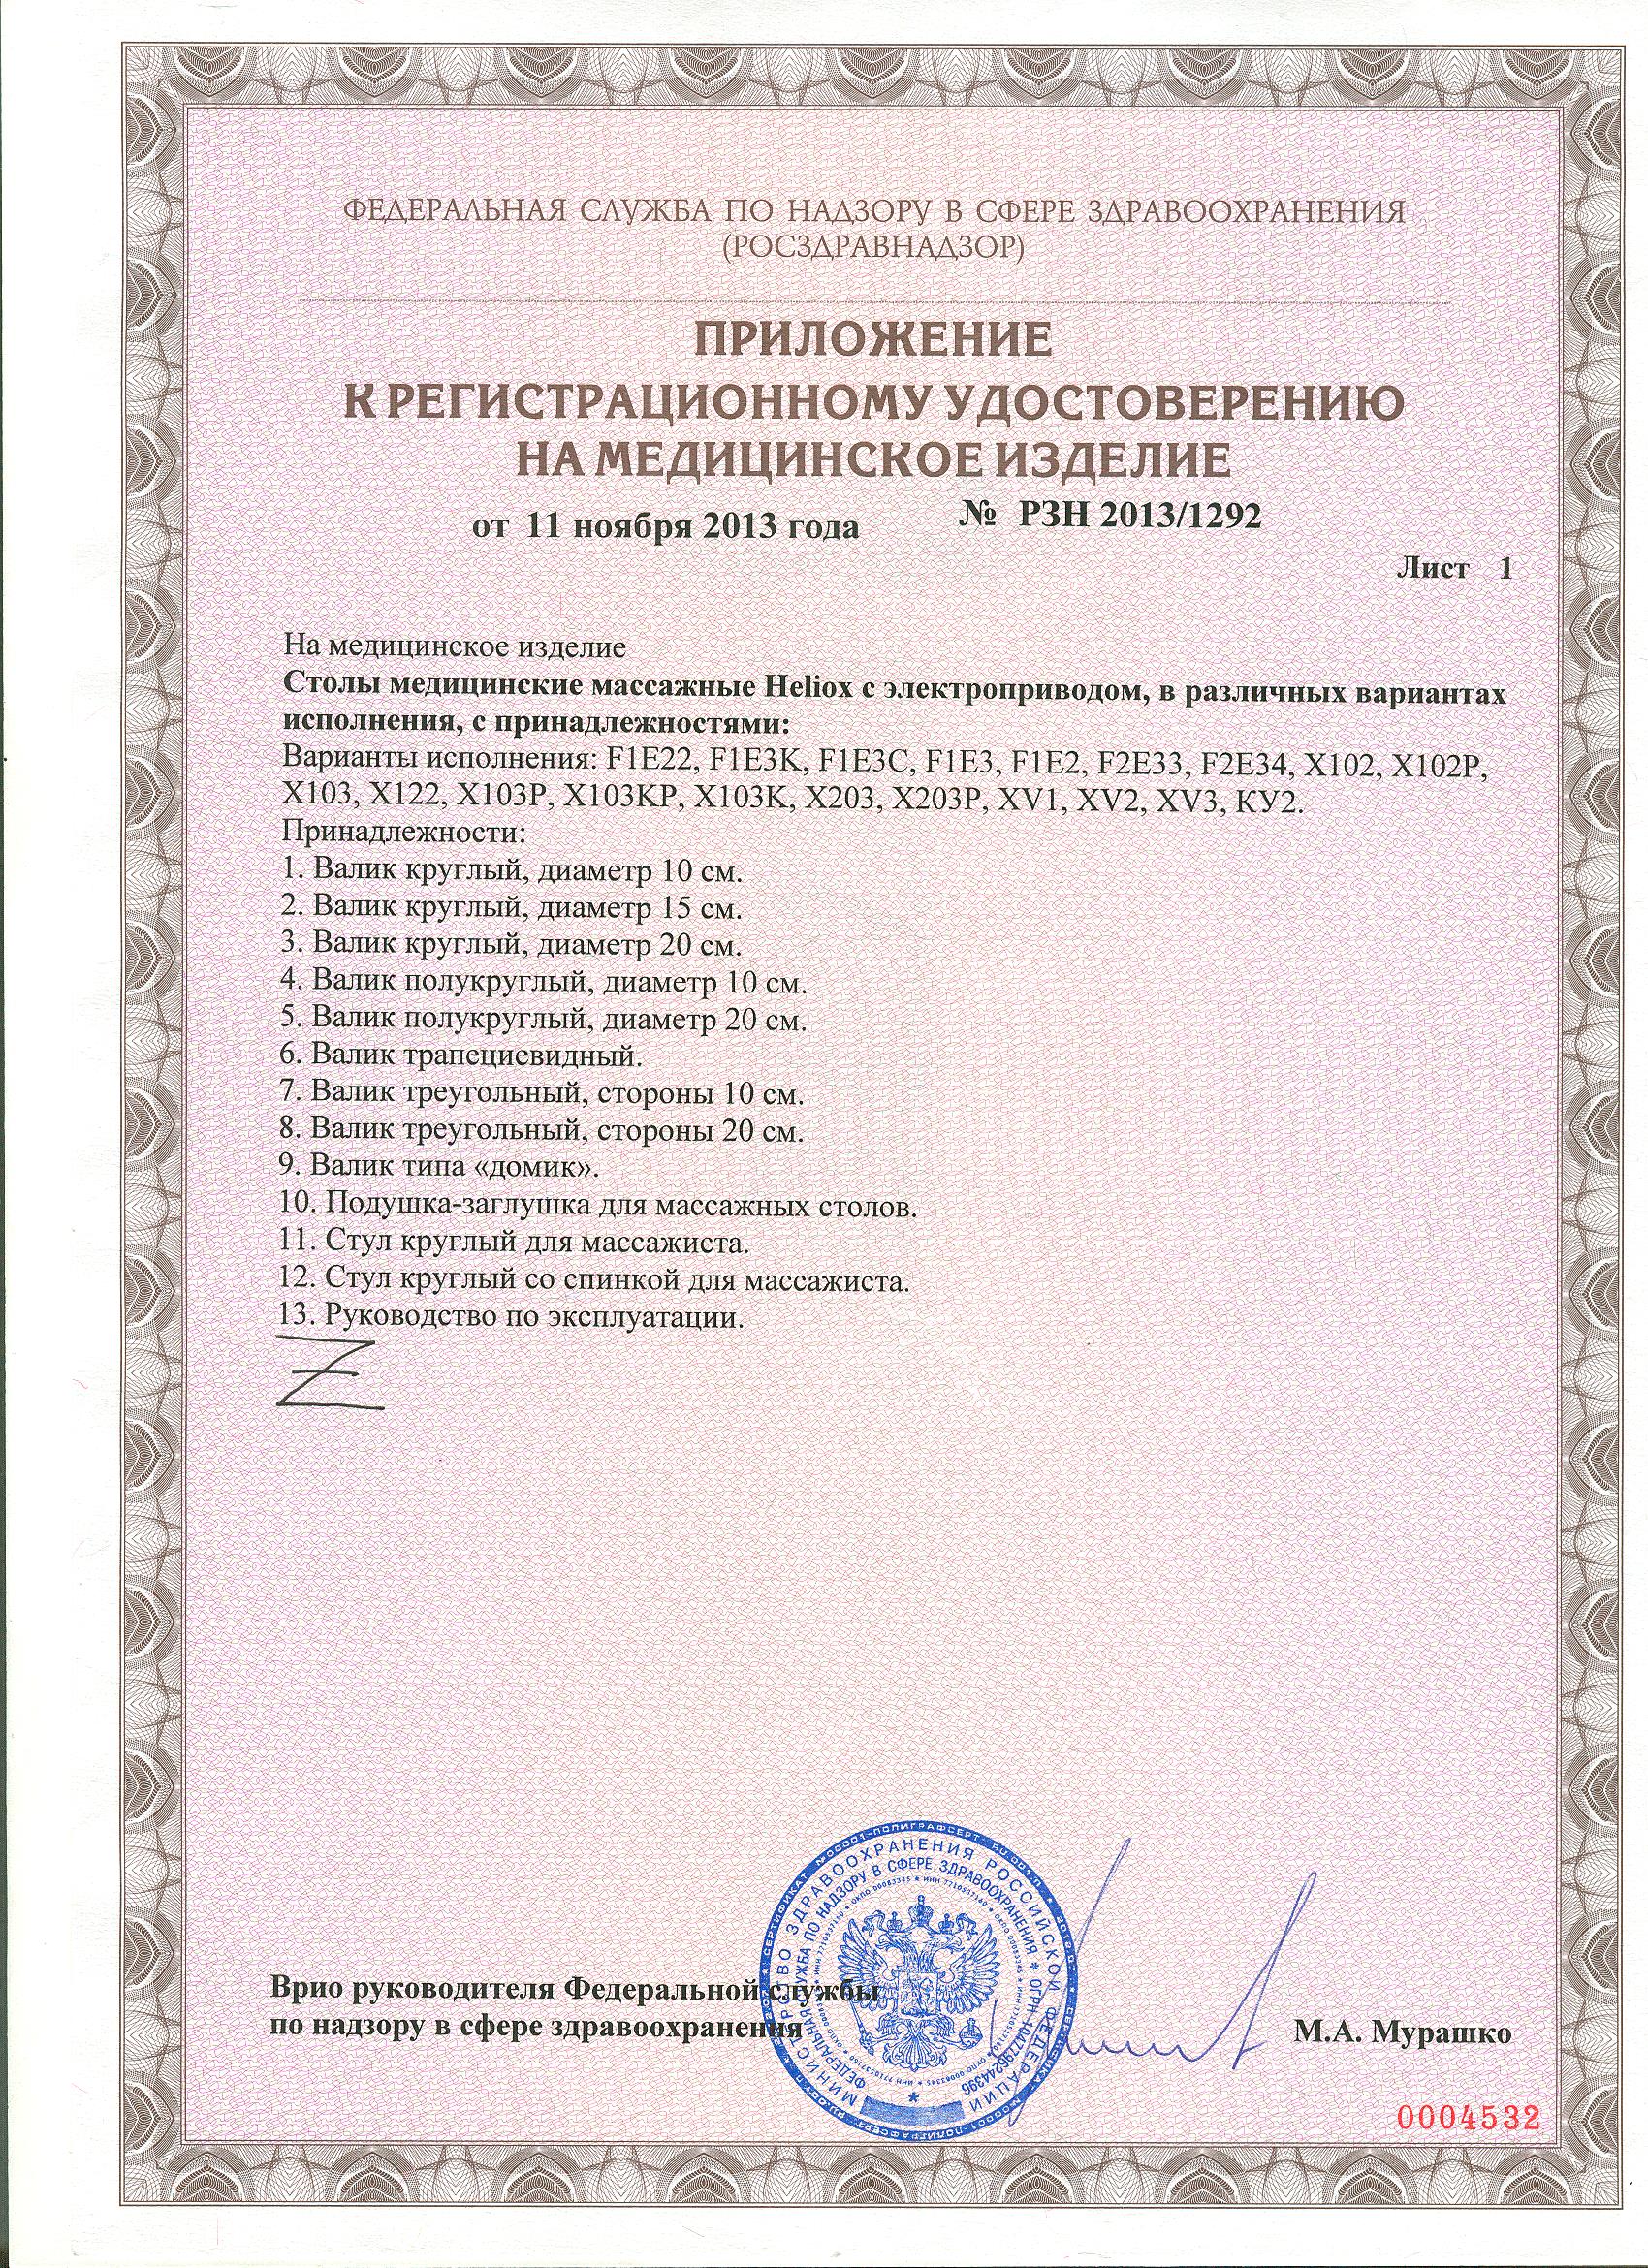 Сертификат на массажный стол